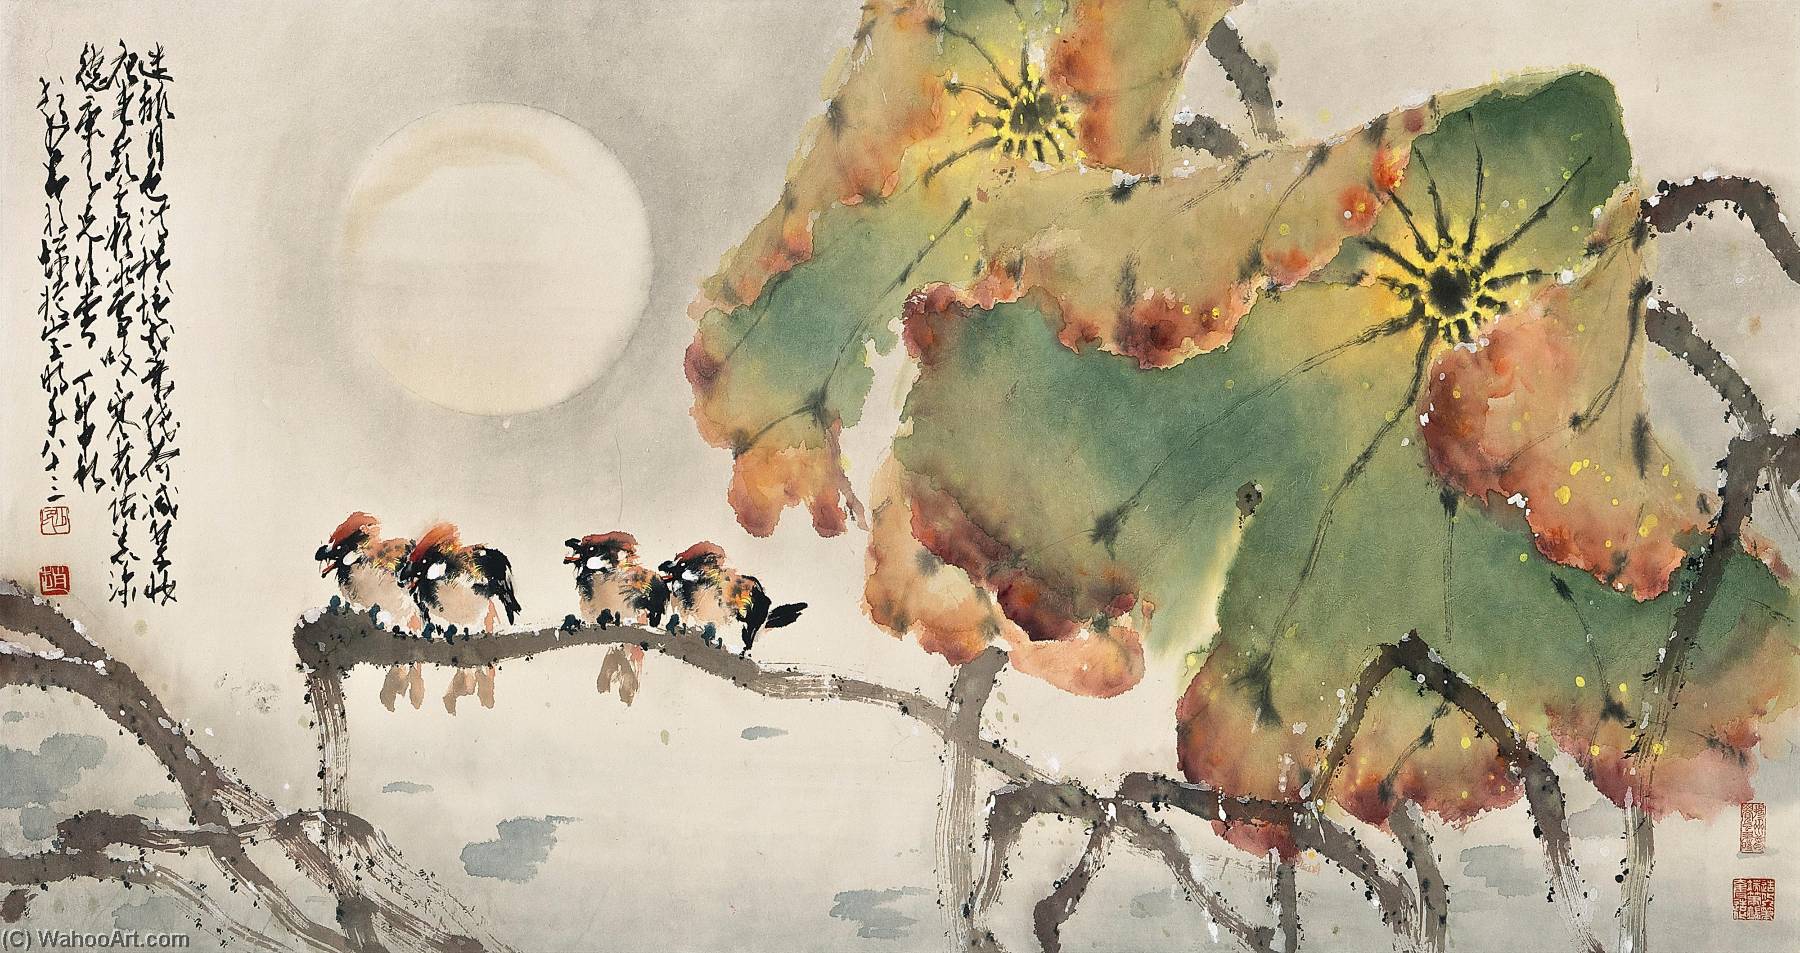 Wikoo.org - موسوعة الفنون الجميلة - اللوحة، العمل الفني Zhao Shao'ang - LOTUSES AND BIRDS IN THE MOONLIGHT